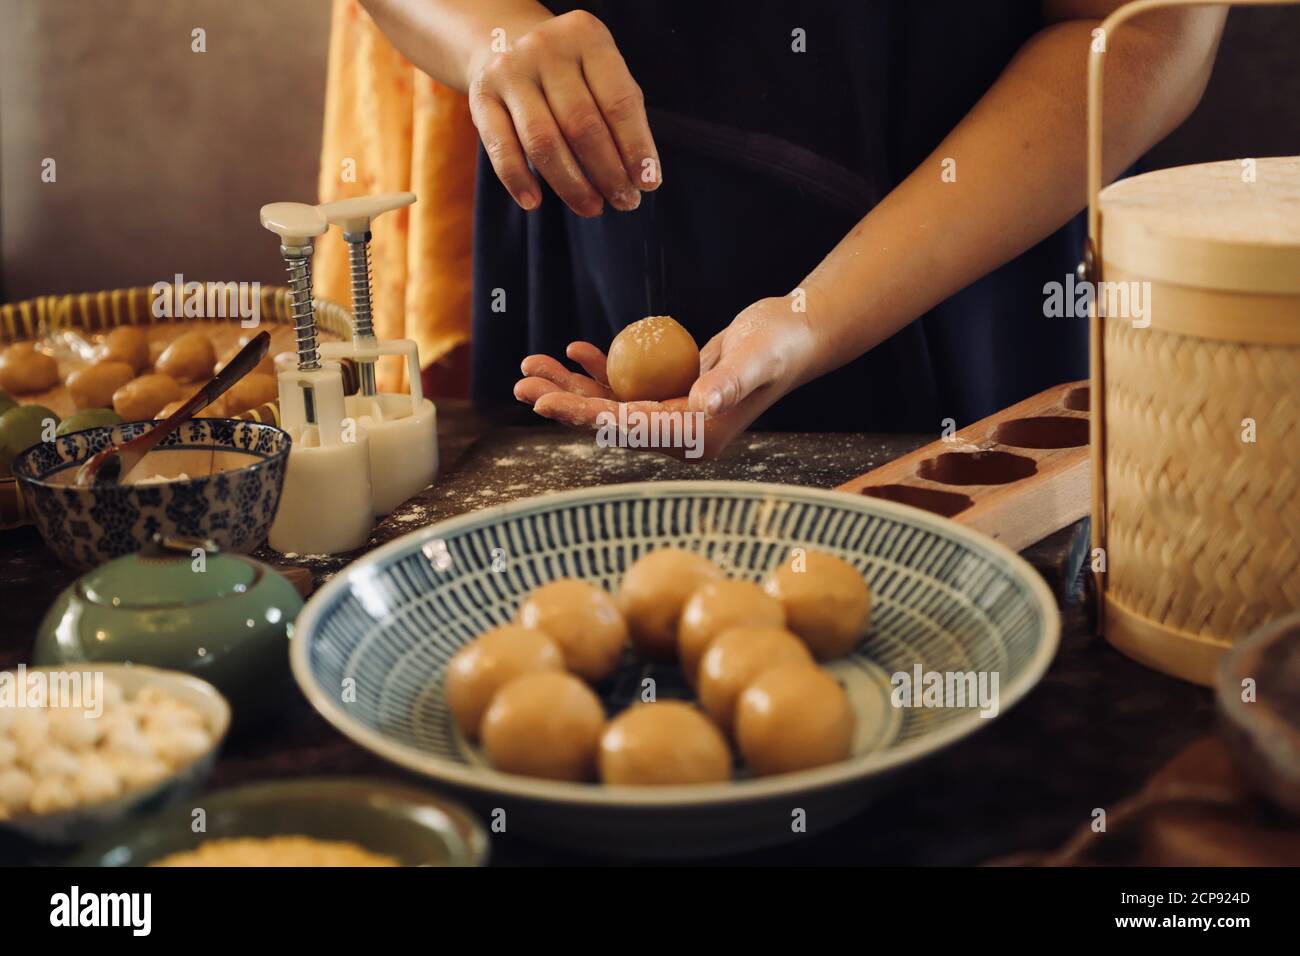 Making Yue Bing, le traditionnel Mooncake chinois pour le festival de la mi-automne Banque D'Images